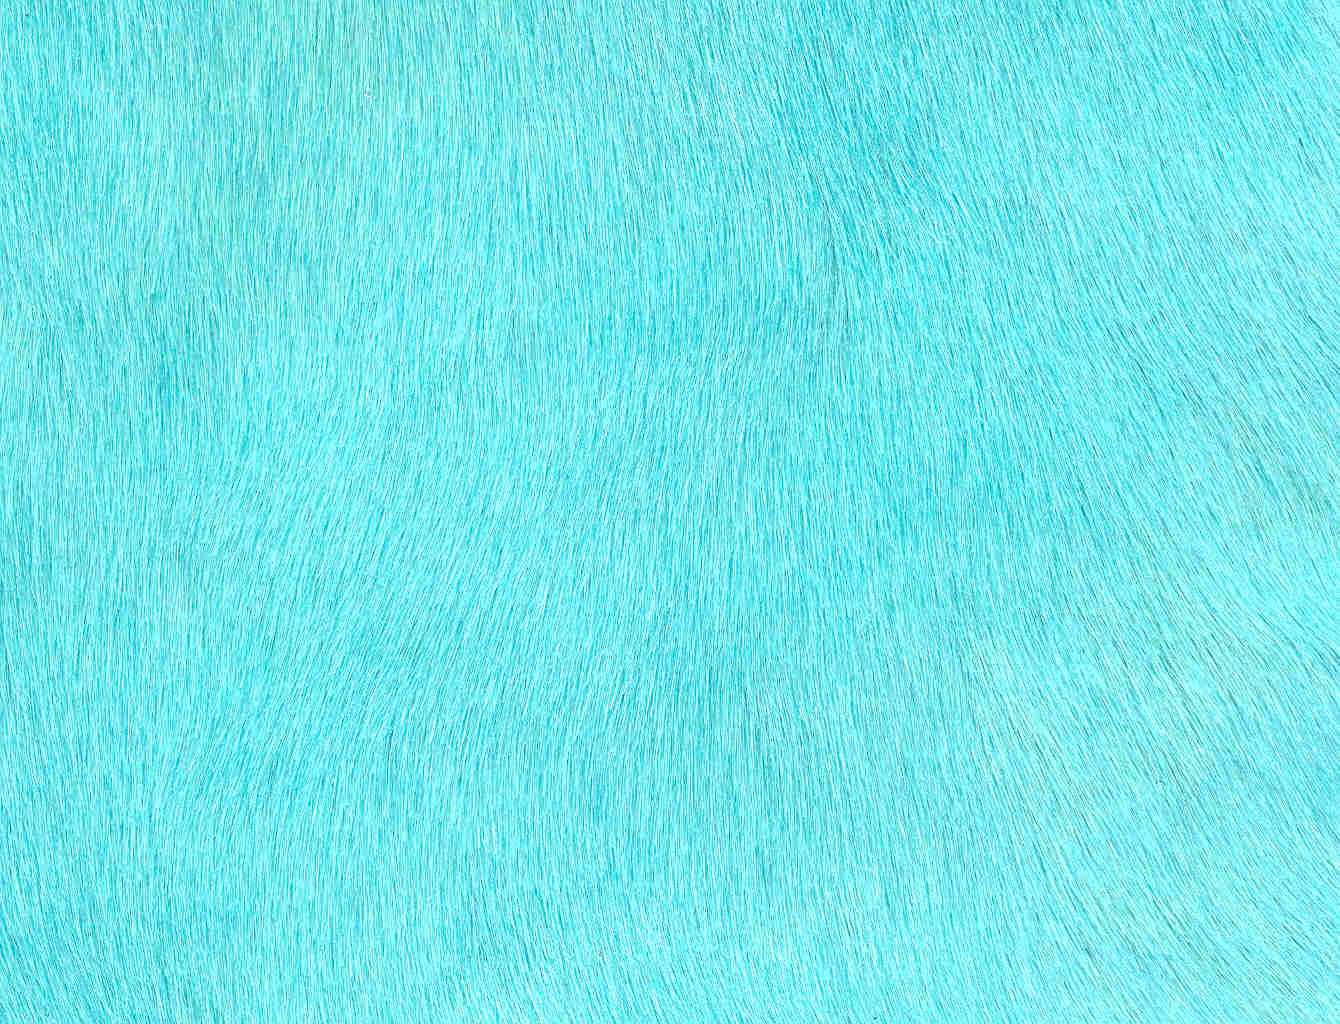 Capelli Turquoise